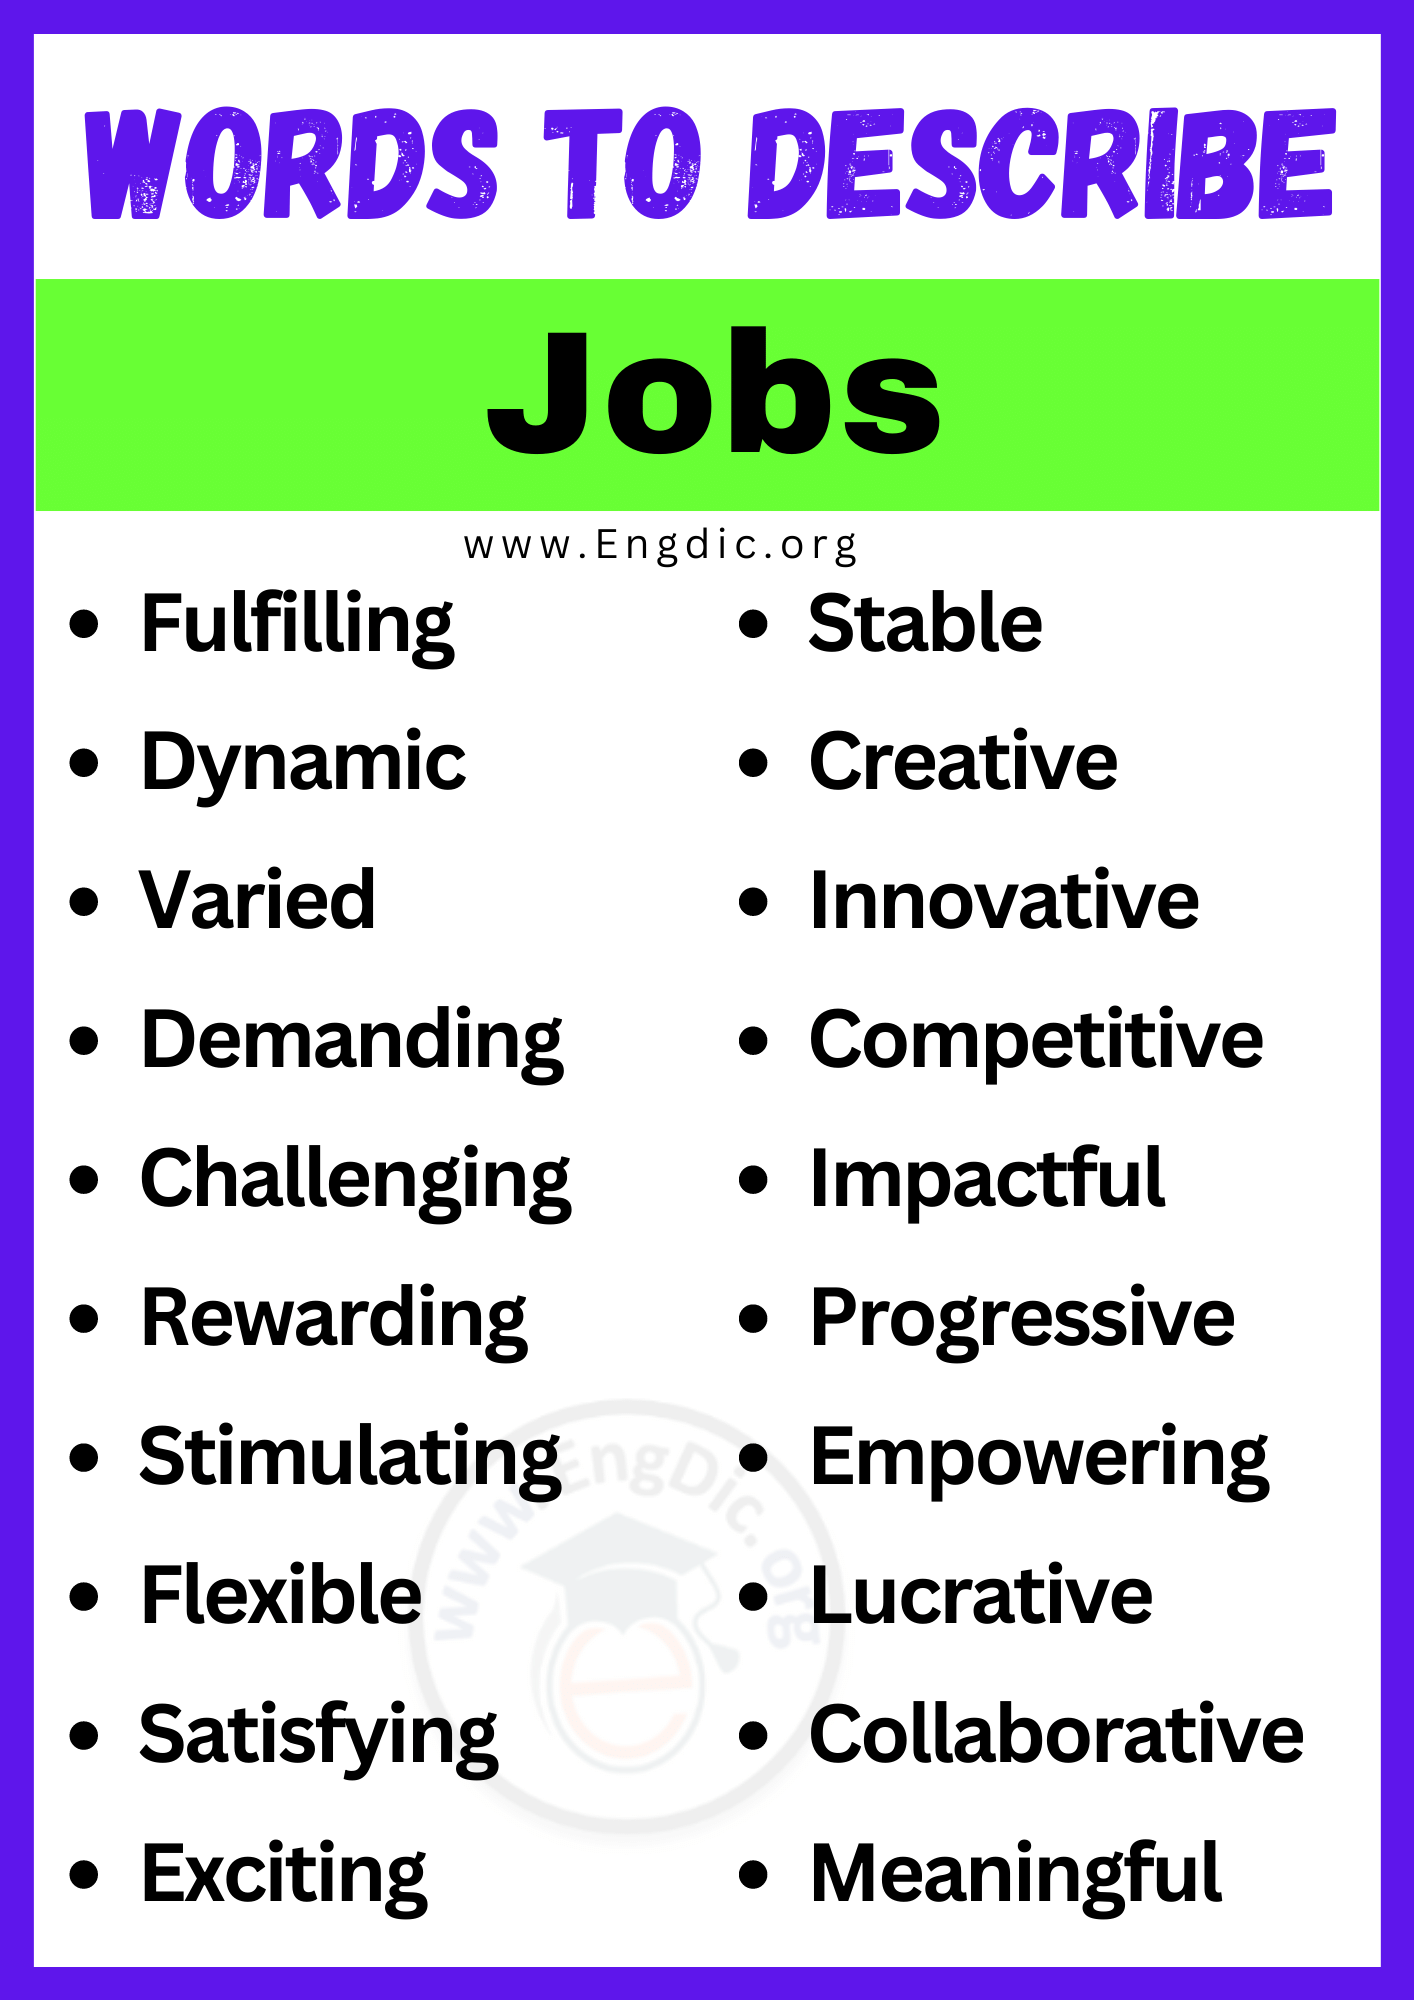 Words to Describe Jobs